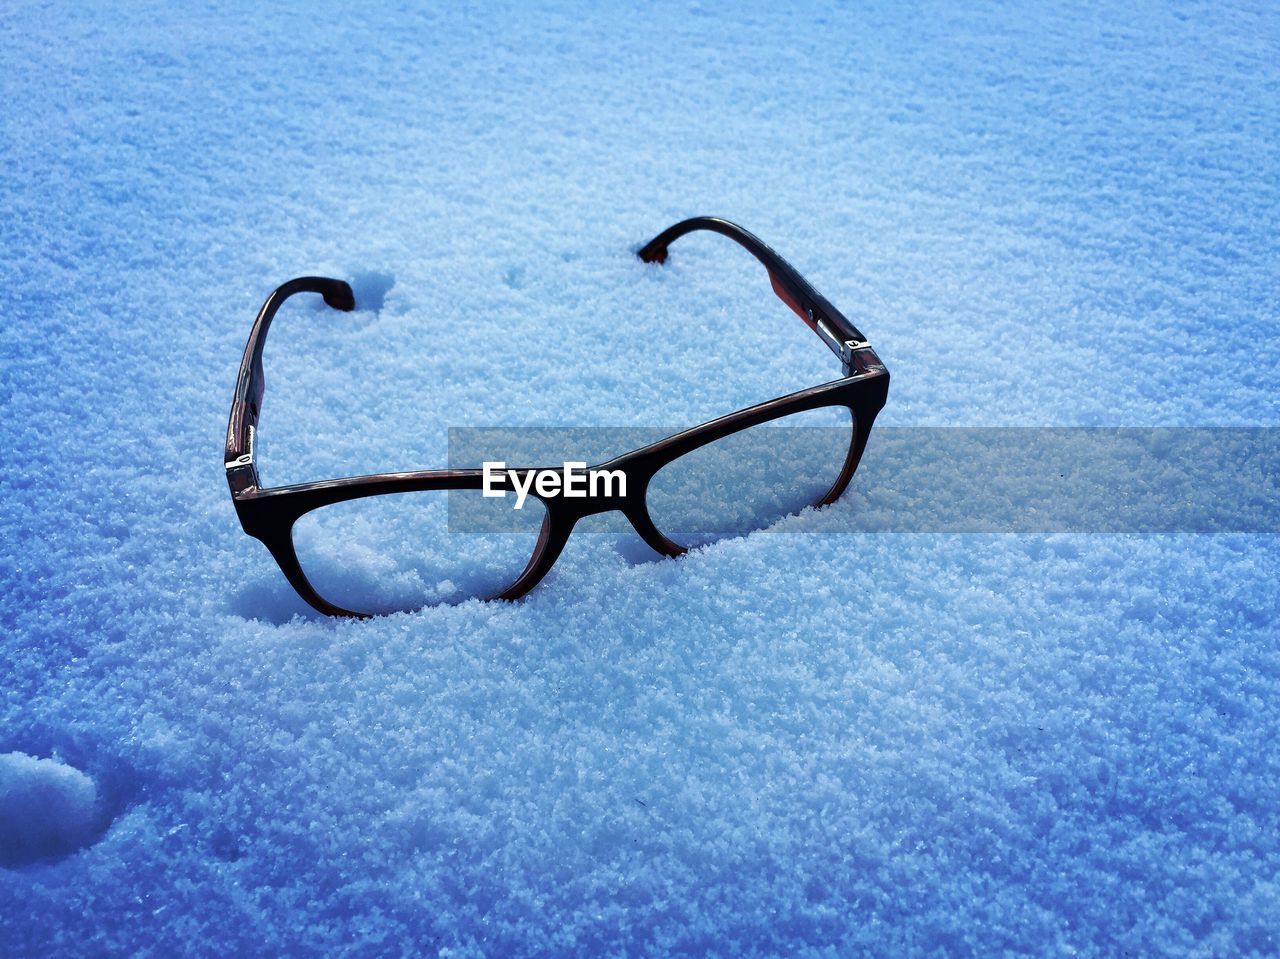 High angle view of eyeglasses on snow